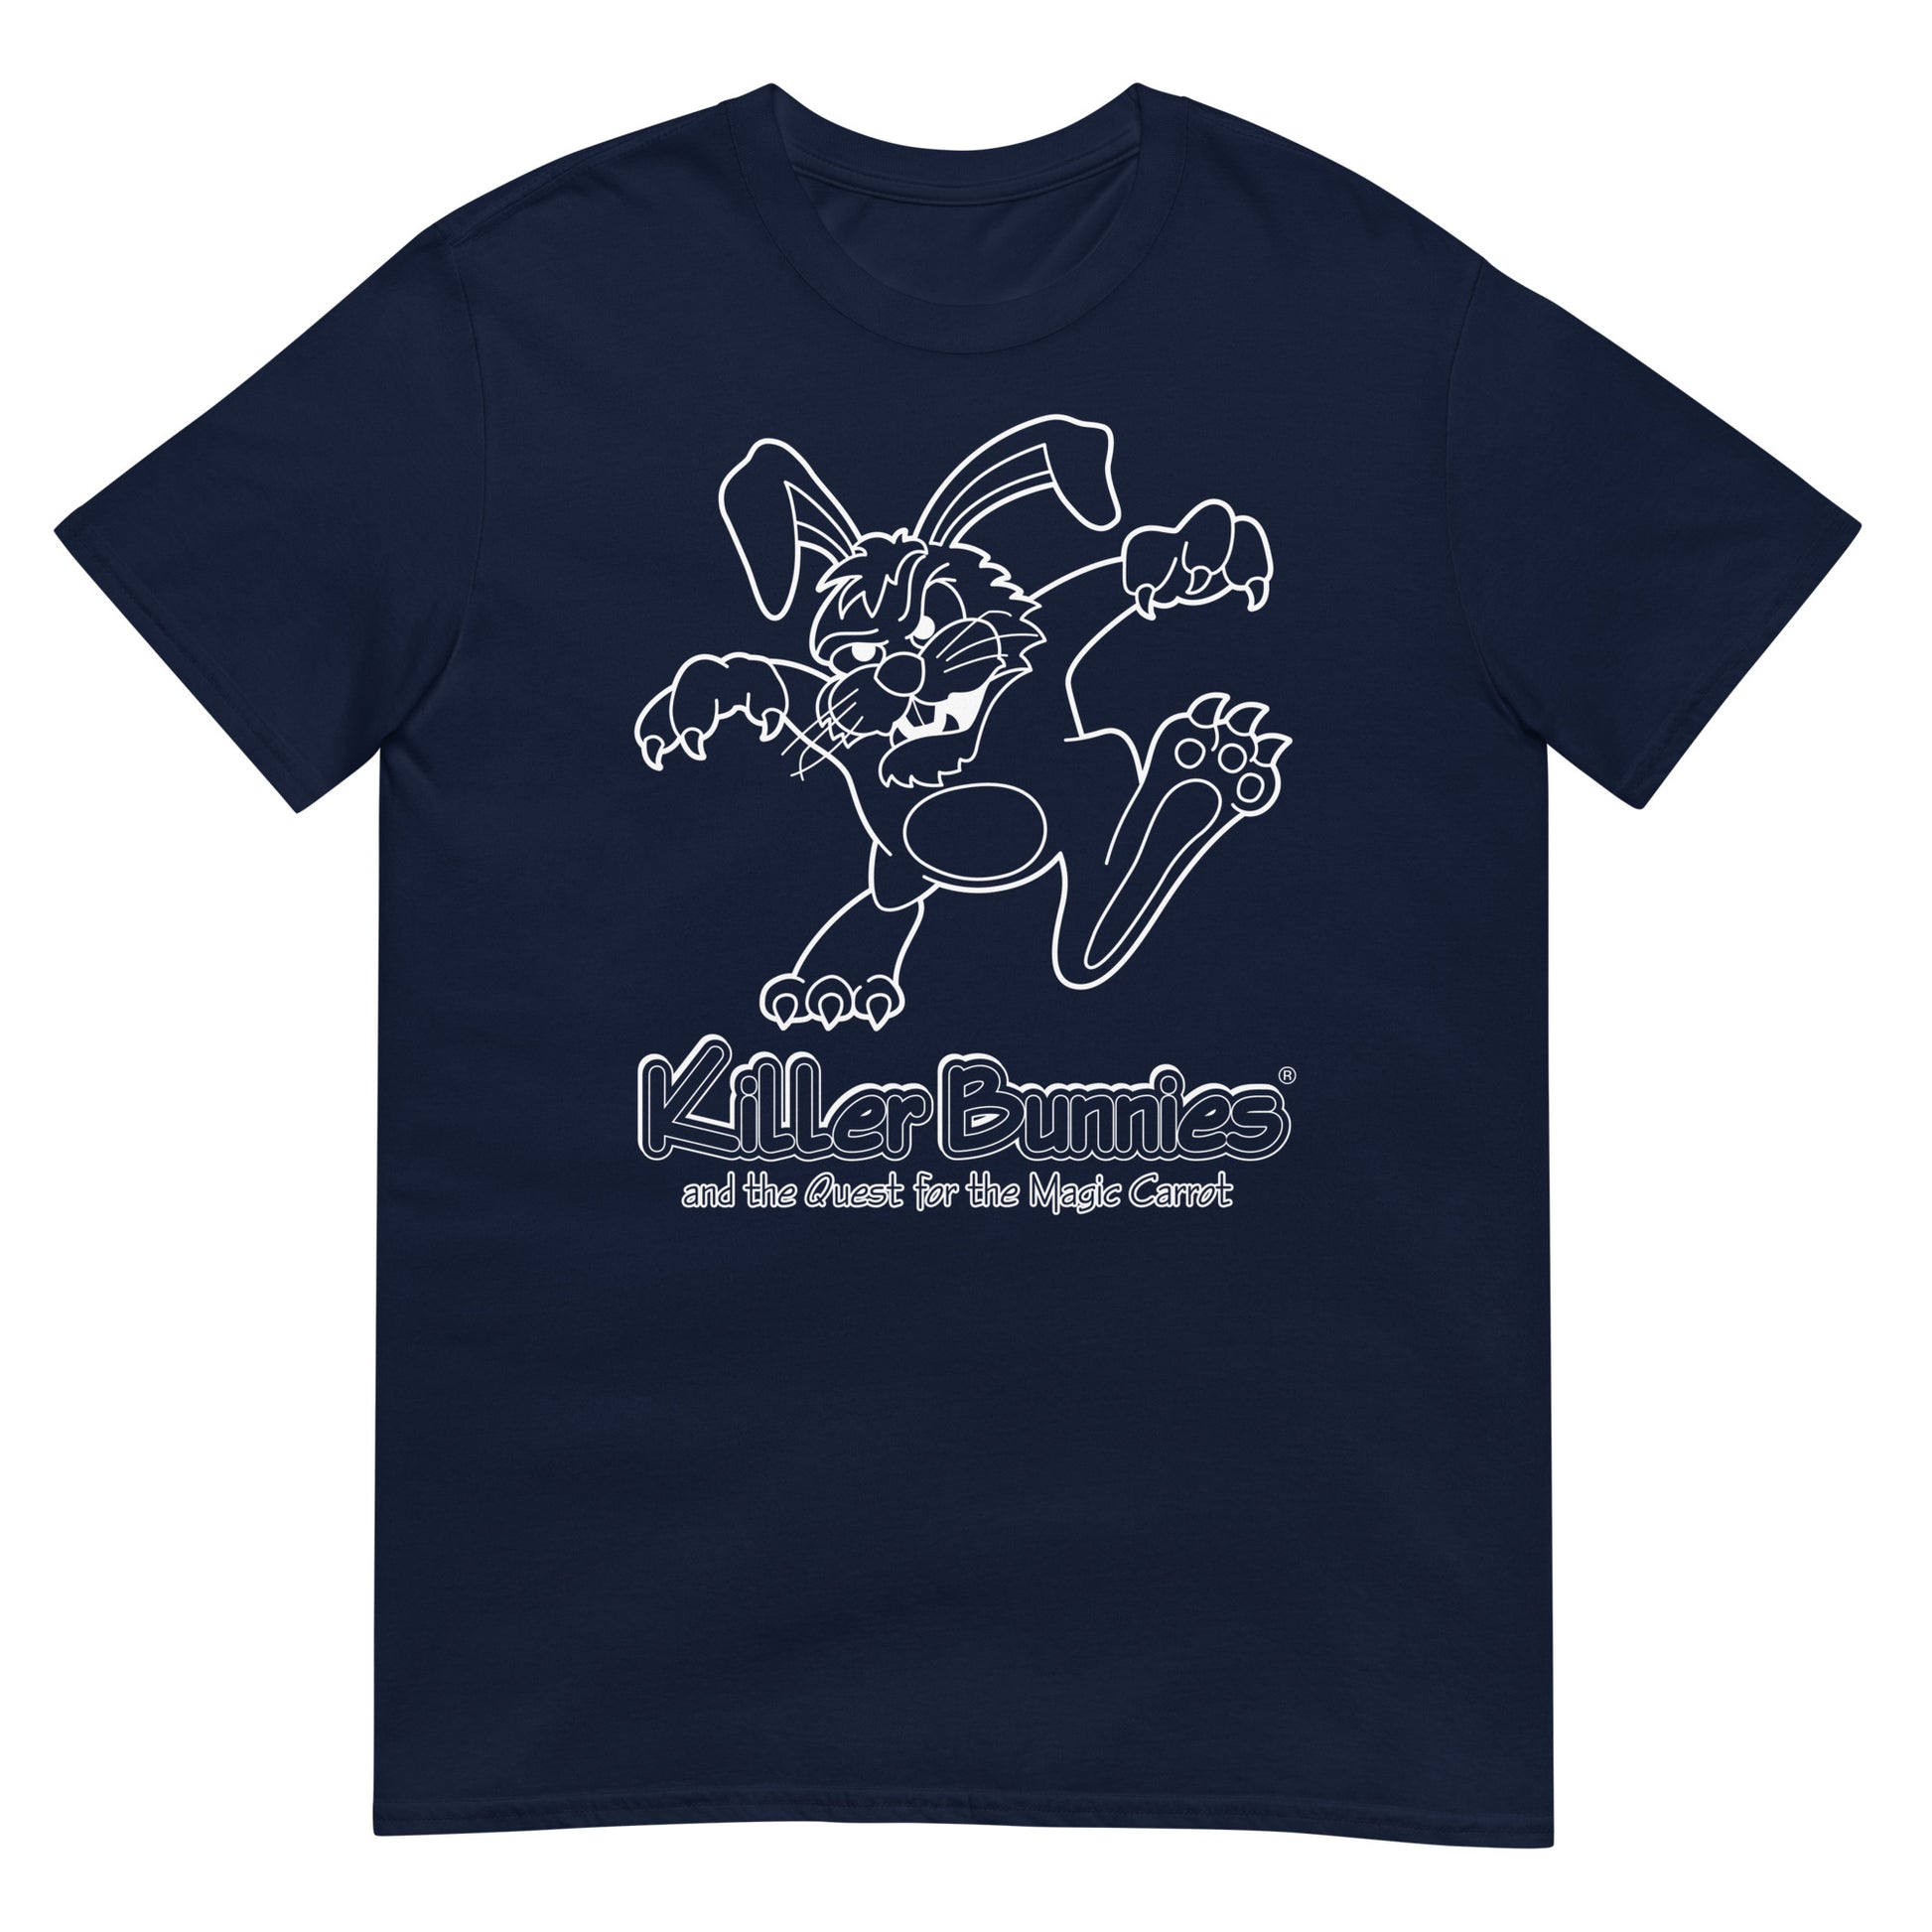 Killer Bunnies Illuminated Unisex T-Shirt - Navy